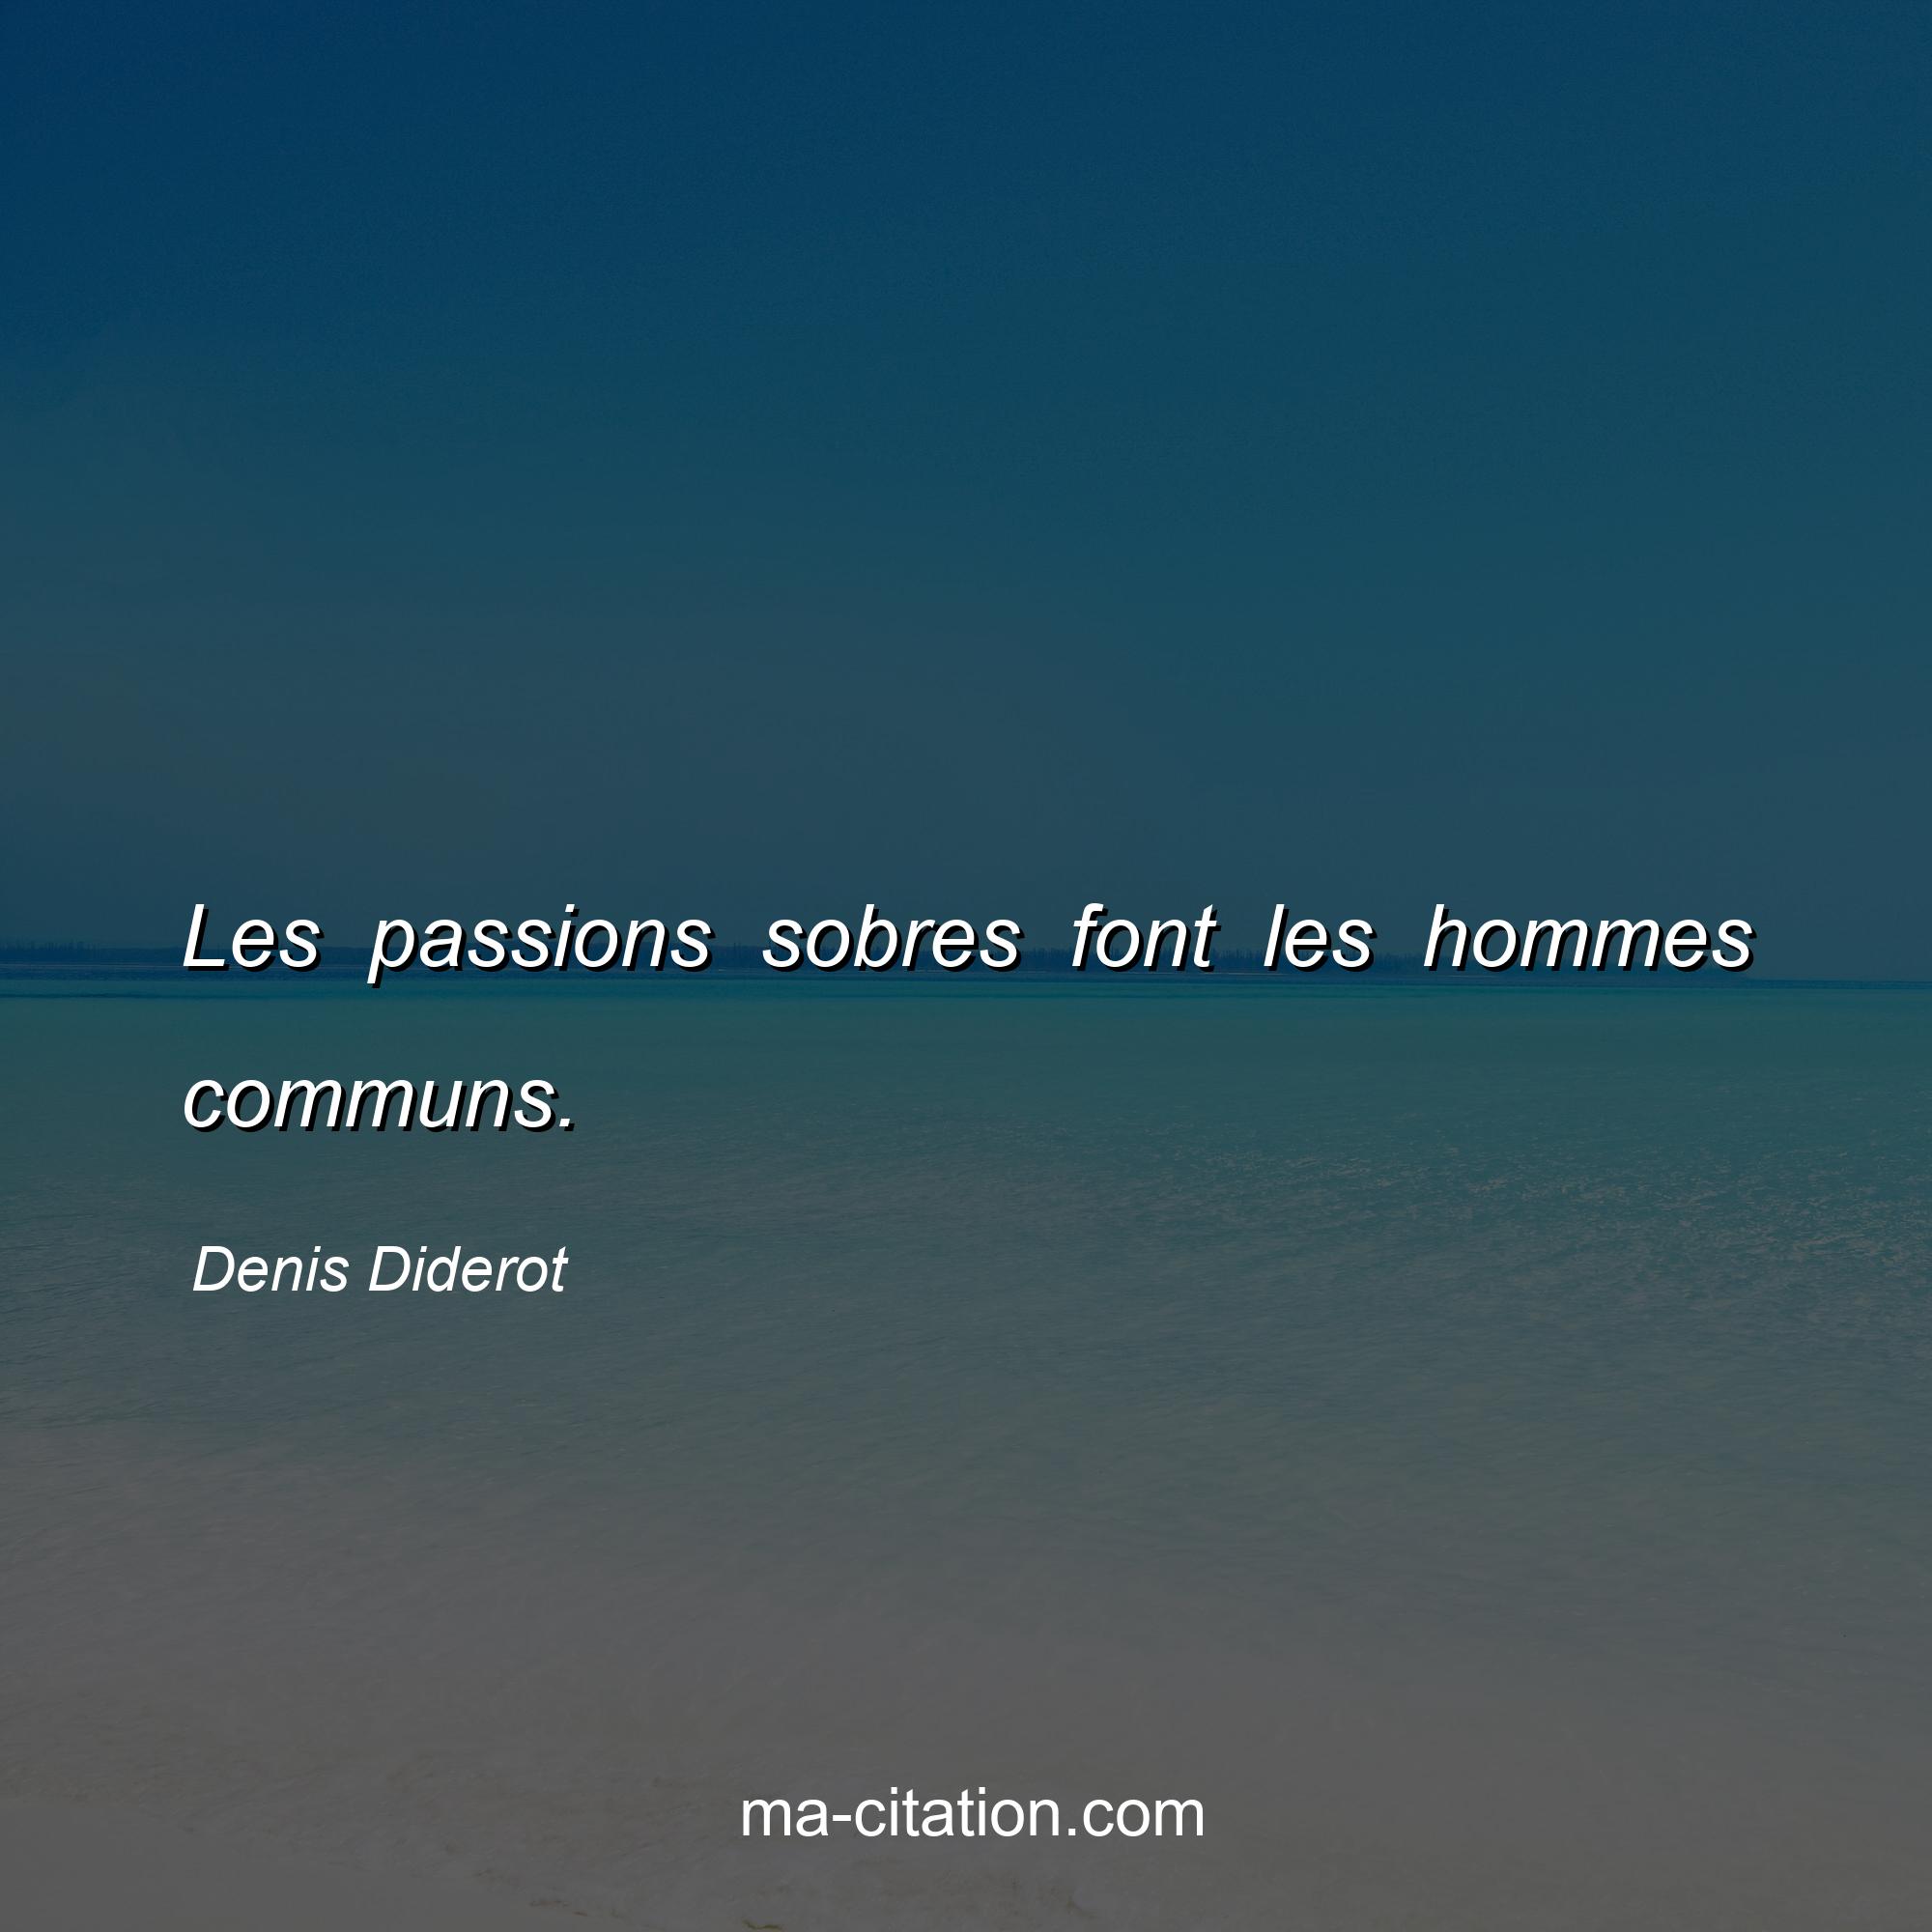 Denis Diderot : Les passions sobres font les hommes communs.